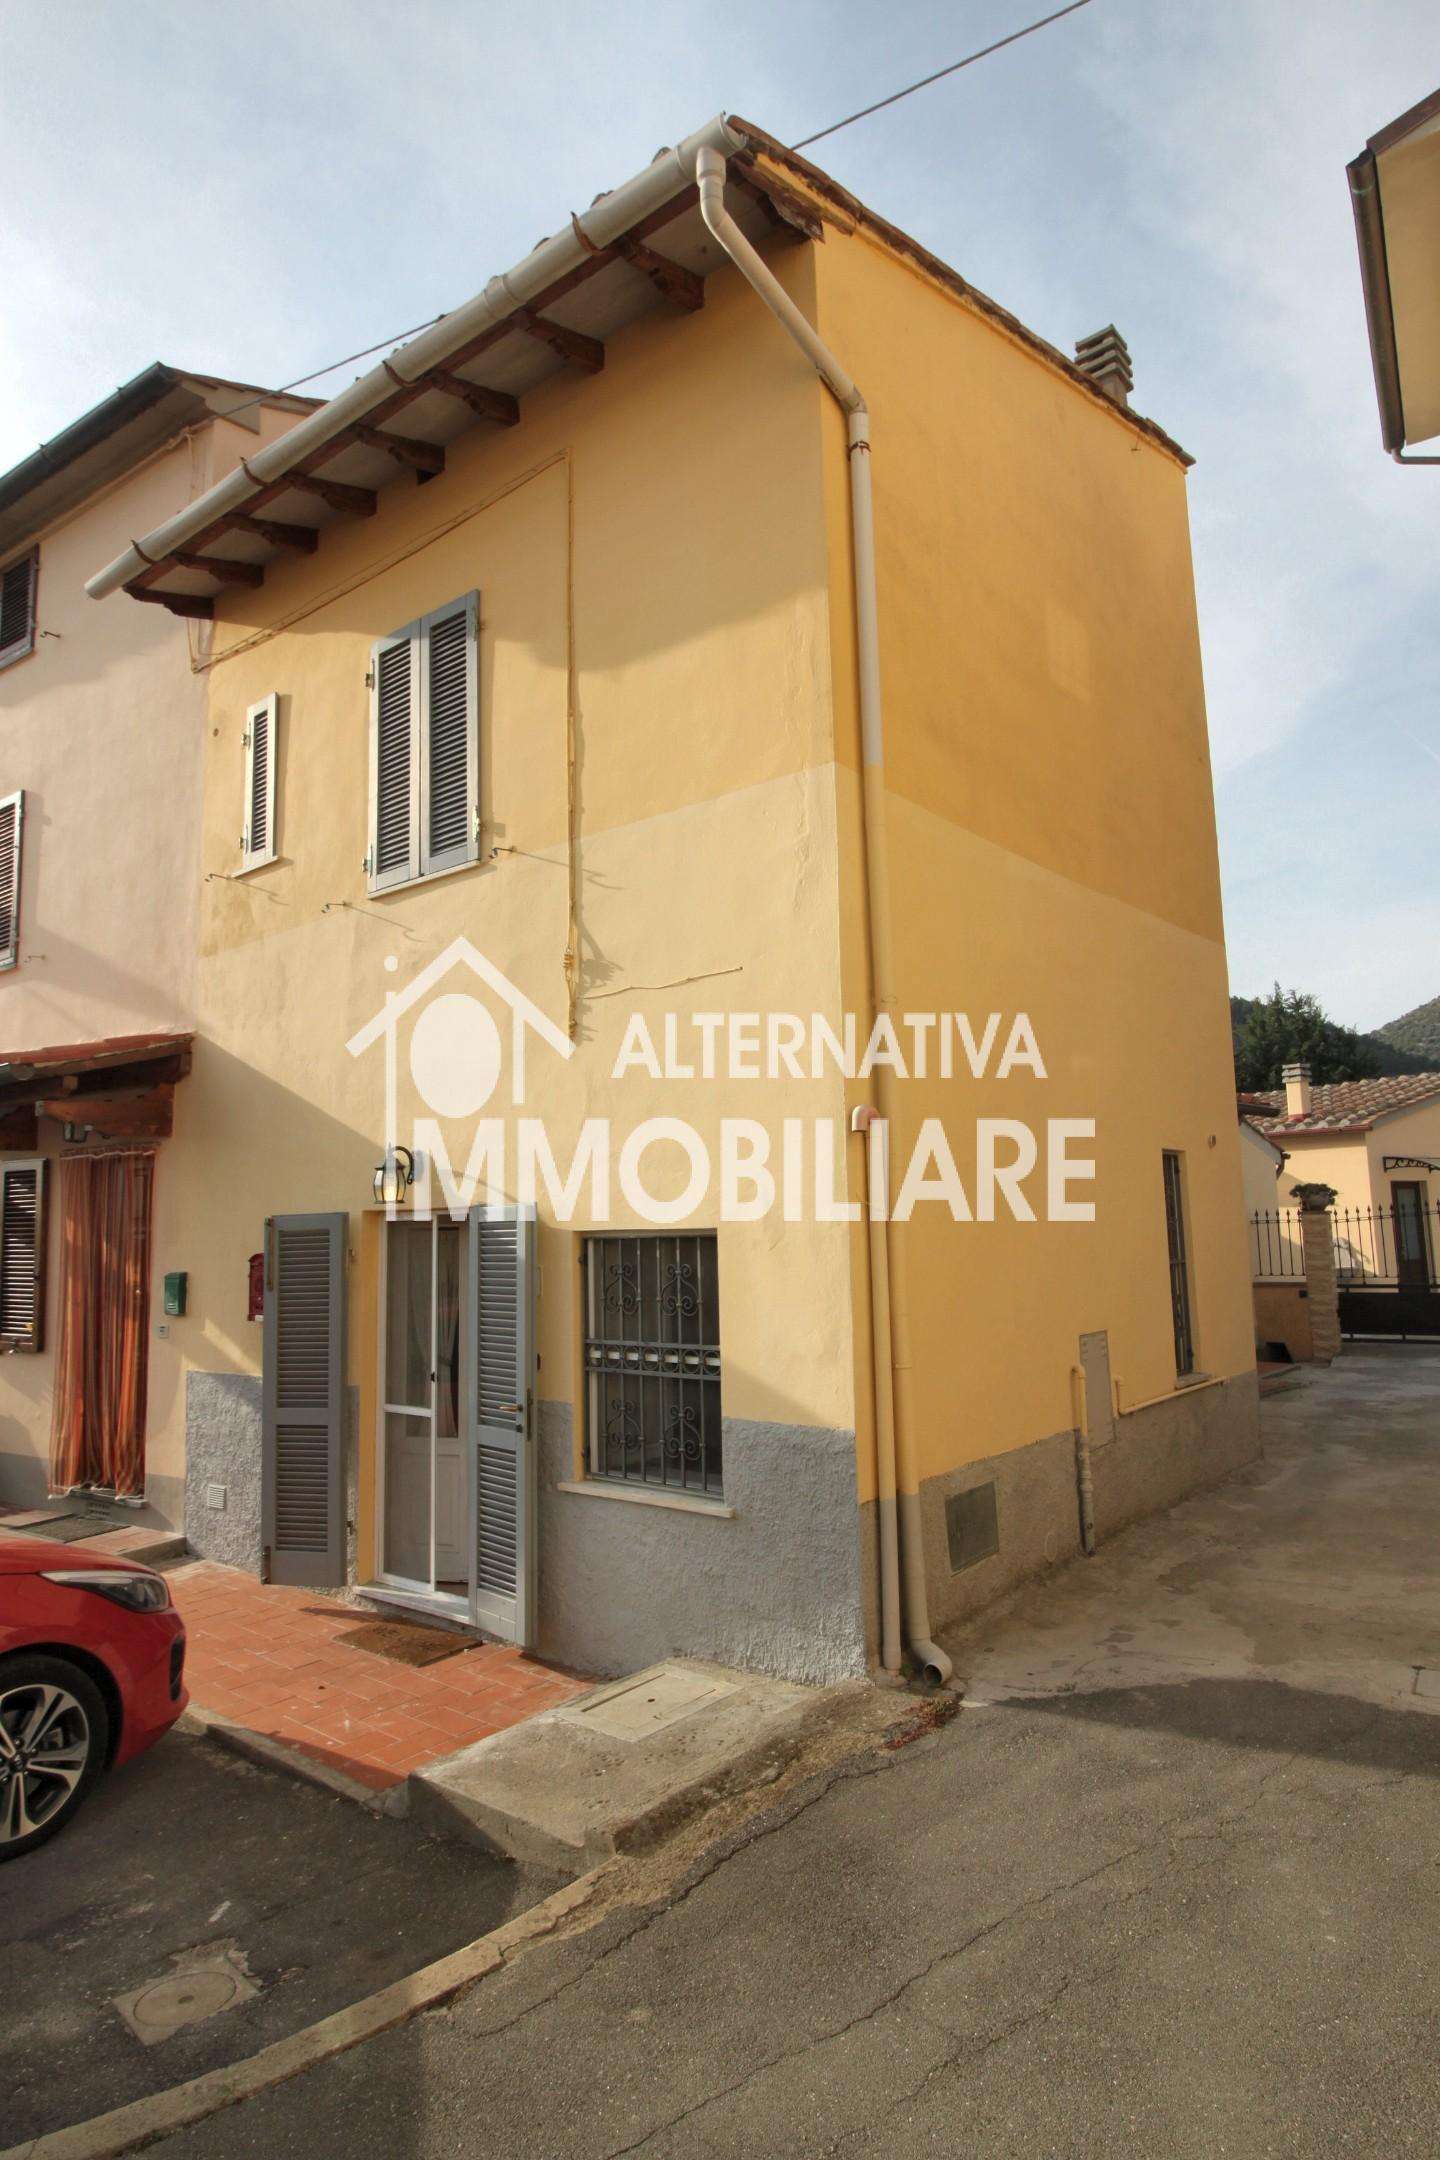 Palazzo - Stabile in Vendita a San Giuliano Terme Asciano PI,